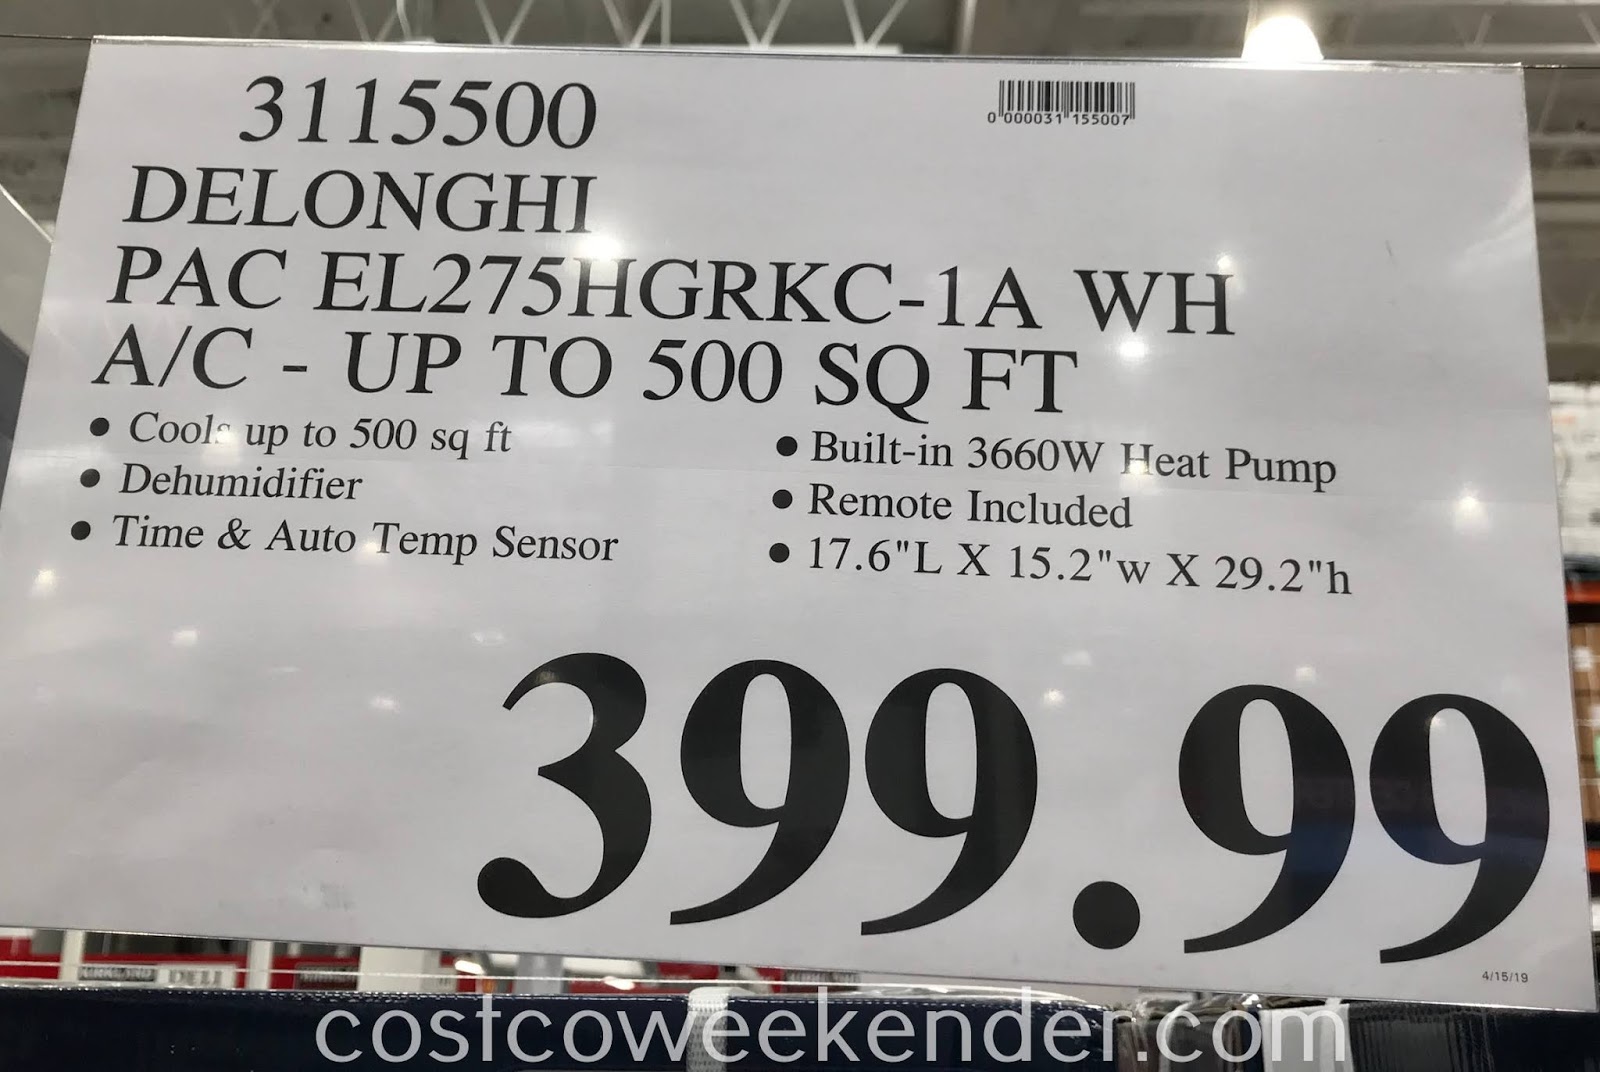 De'Longhi PAC EL275HGRKC-1A WH Portable Air Conditioner | Costco Weekender